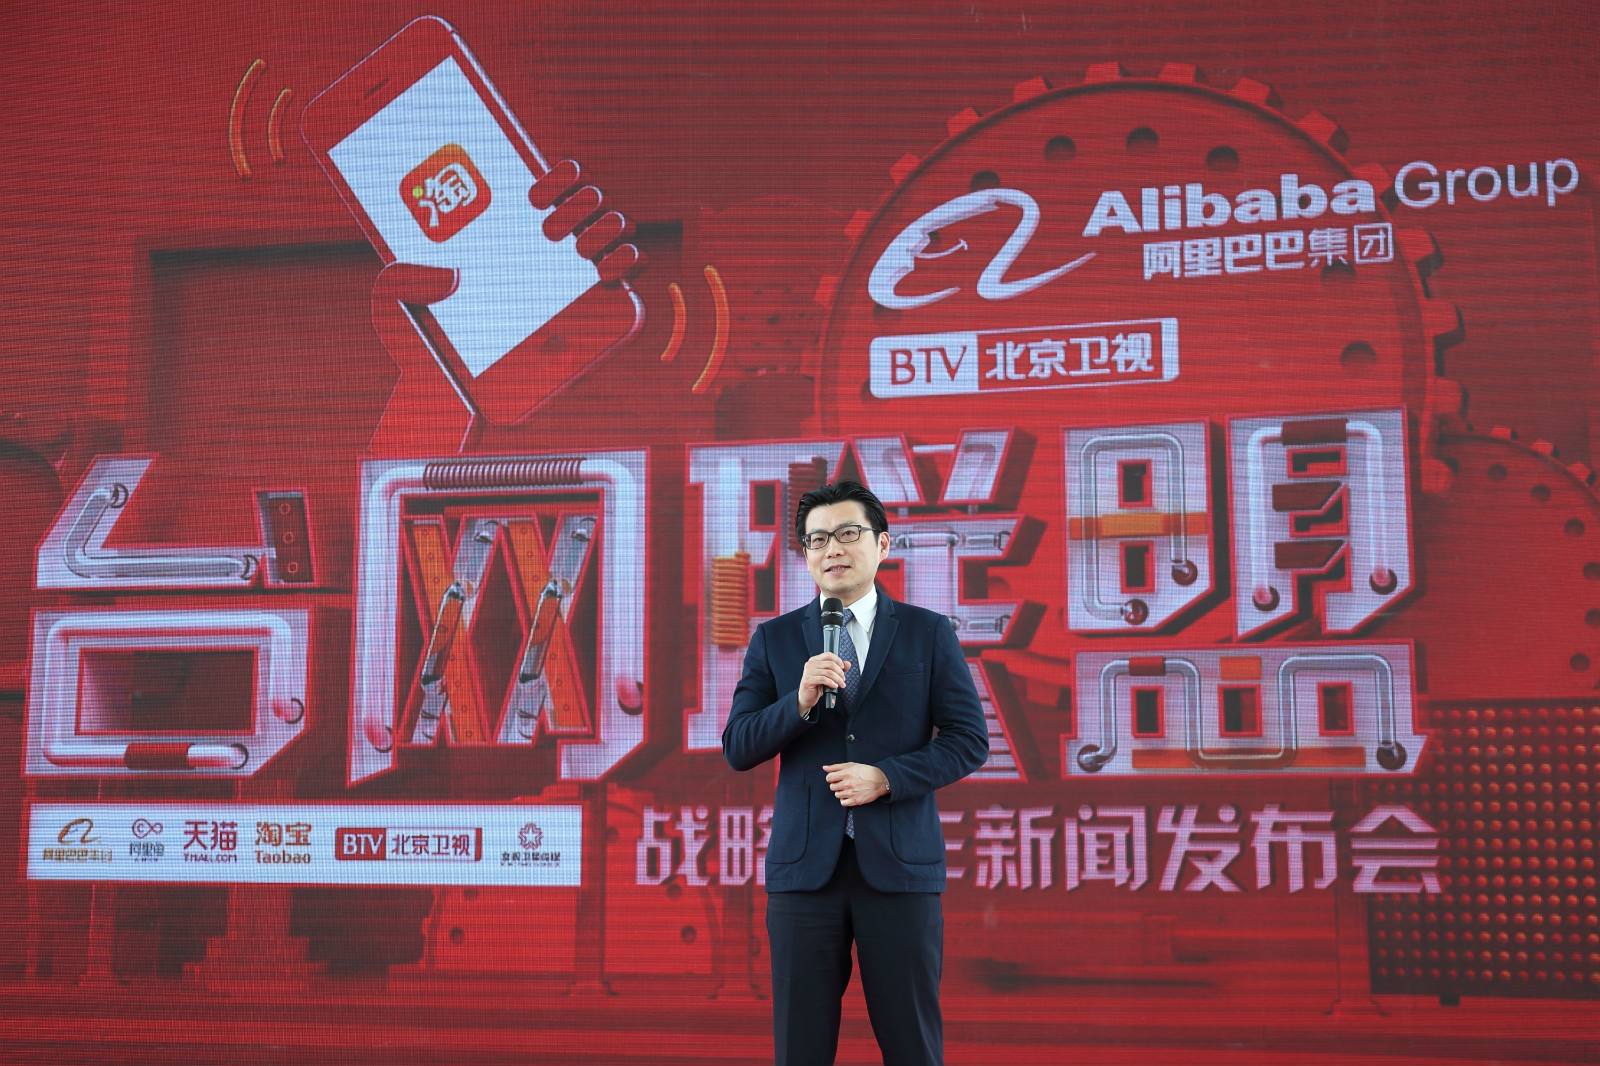 2017年4月23日電視台收視率排行榜,湖南衛視收視率第一北京衛視收視率第三